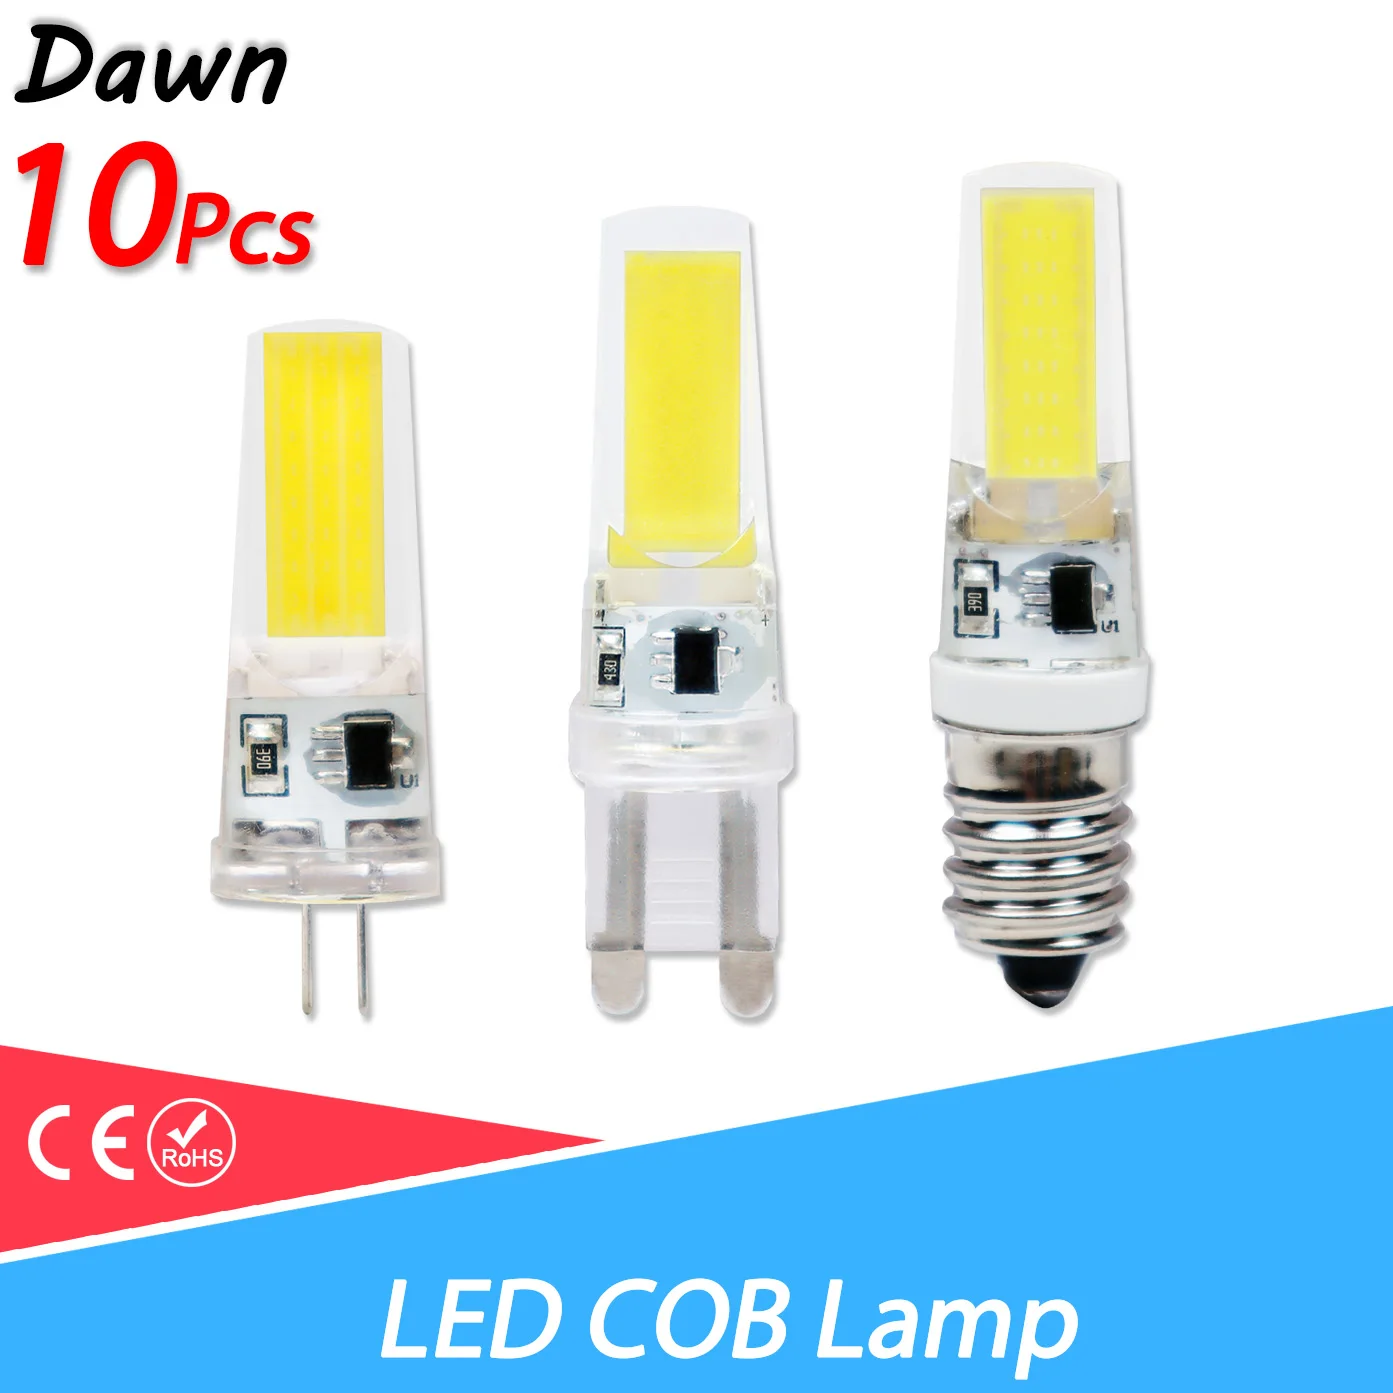 

10pcs LED G4 G9 E14 3W 6W 9W Light Bulb AC/DC 12V 220V LED Lamp COB Spotlight Chandelier Lighting Replace 30W 60W Halogen Lamps